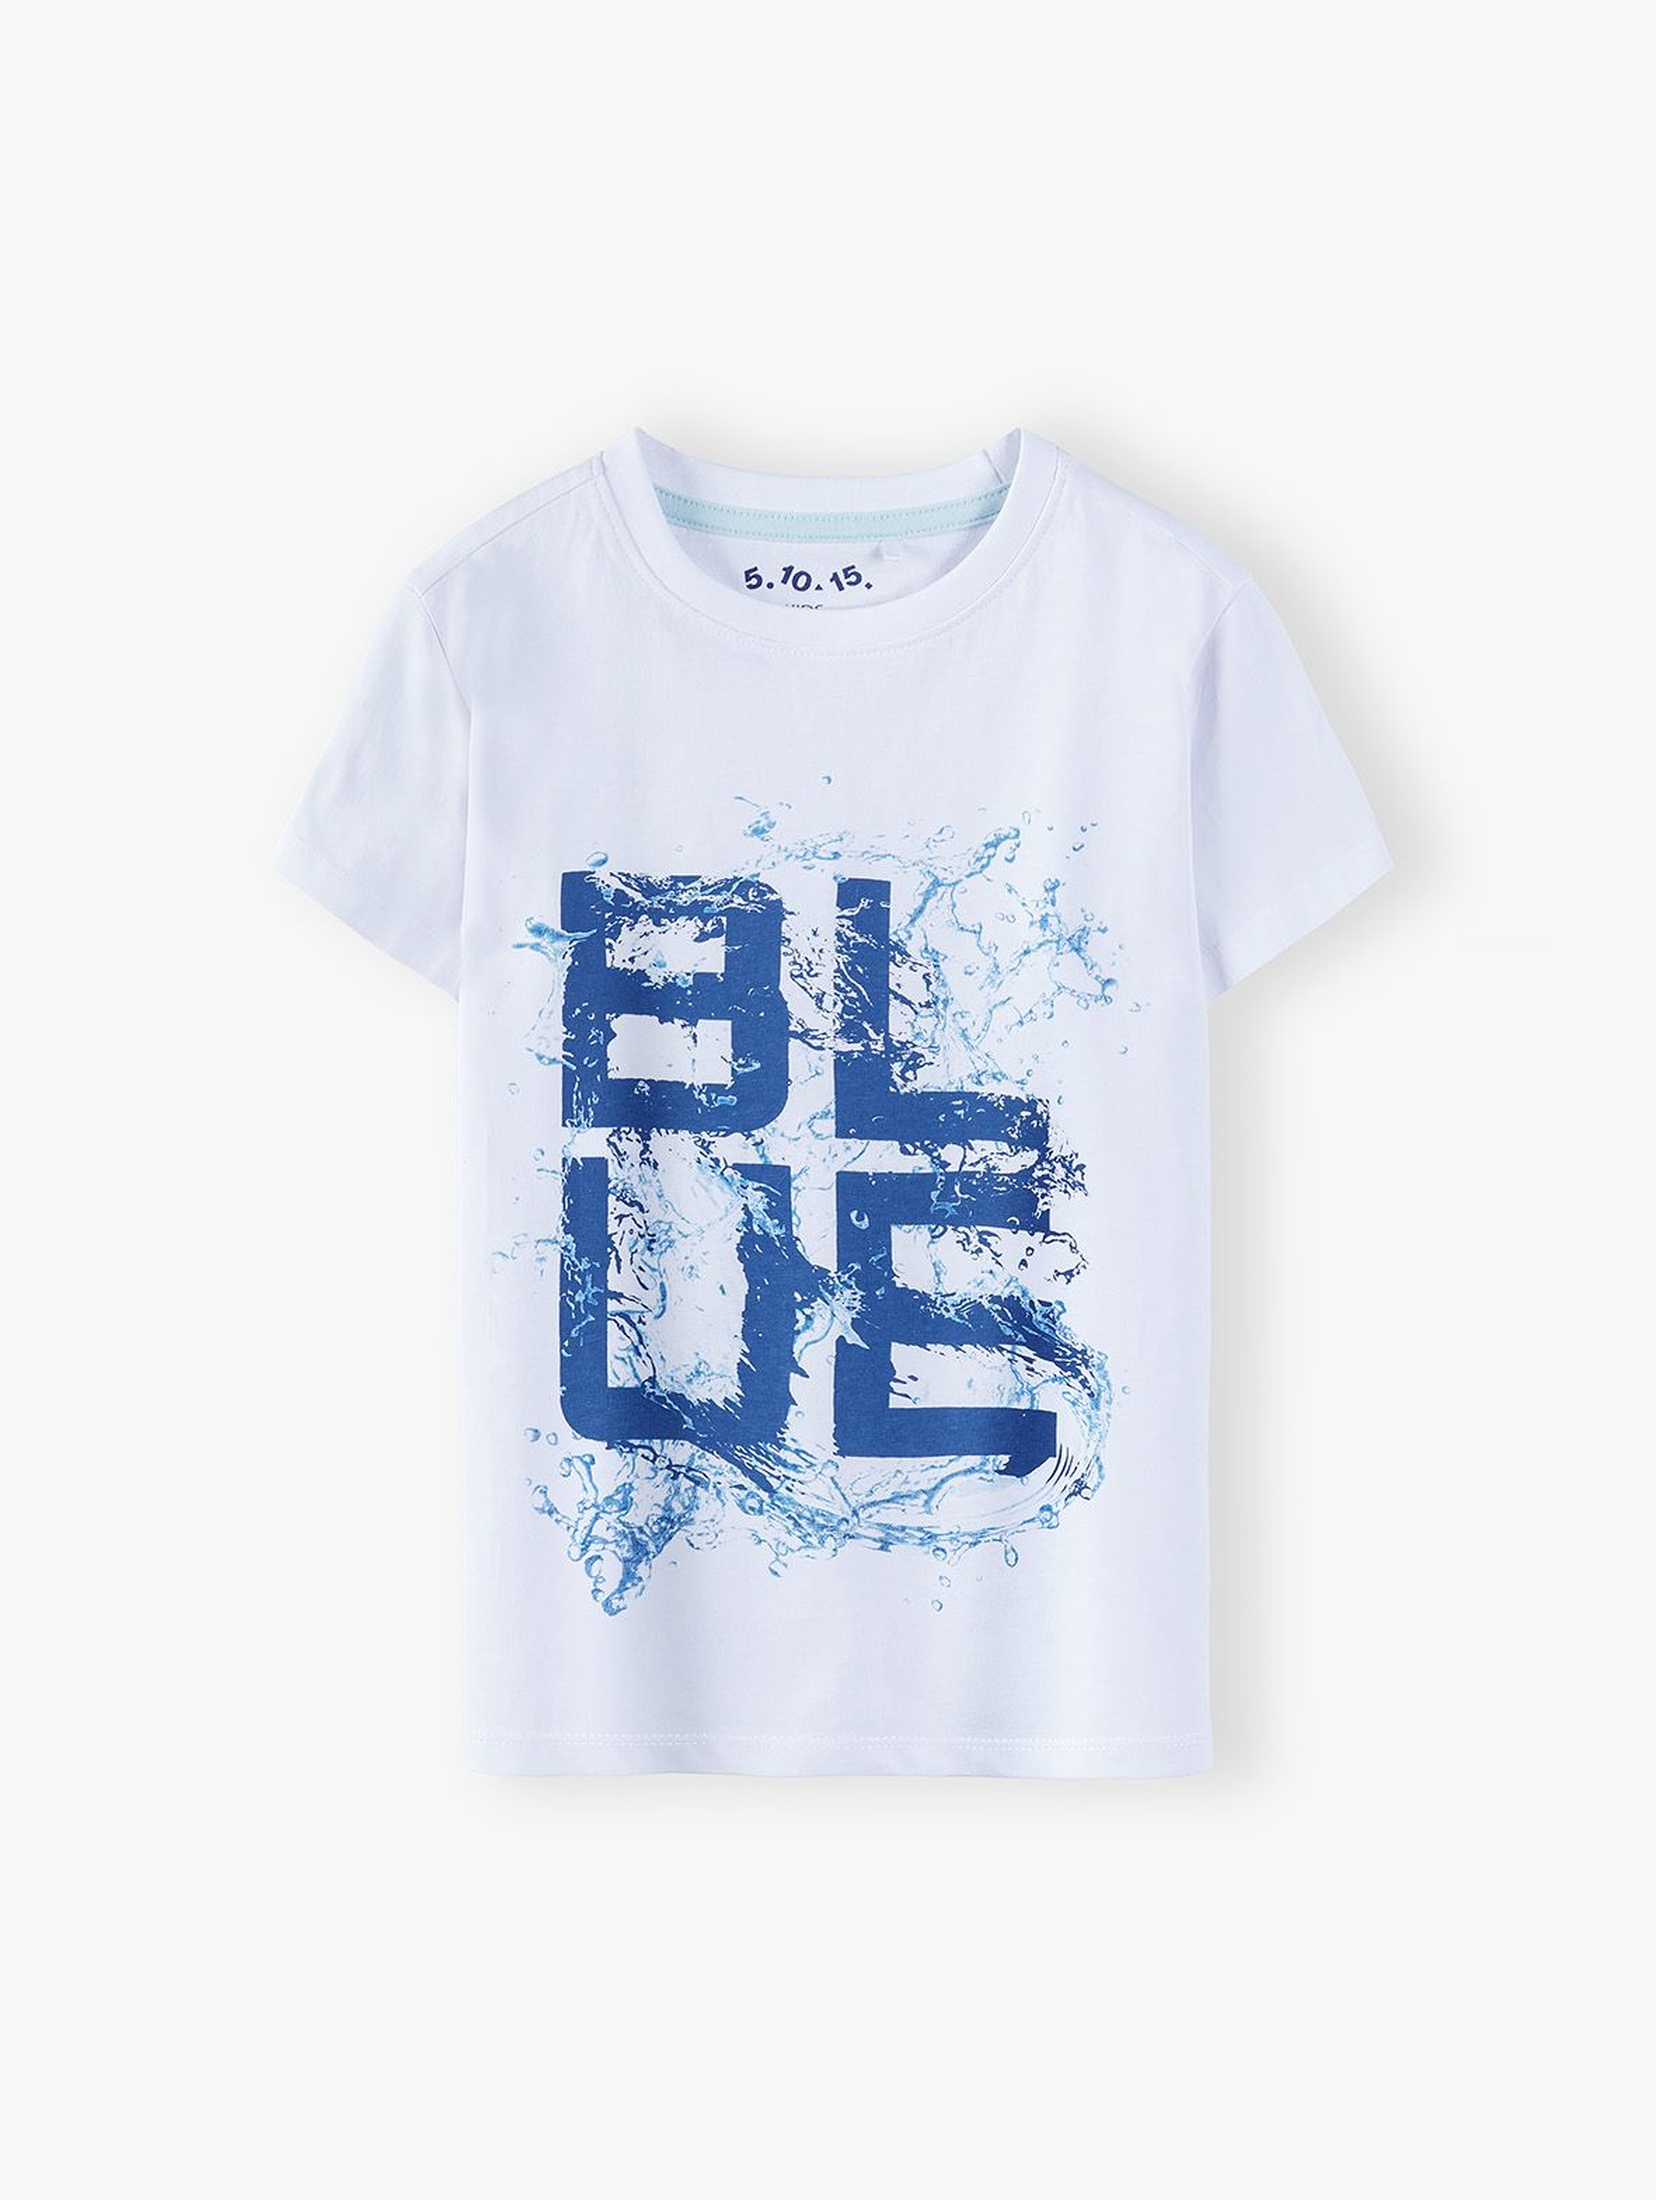 T-shirt chłopięcy  w kolorze białym z napisem- Blue